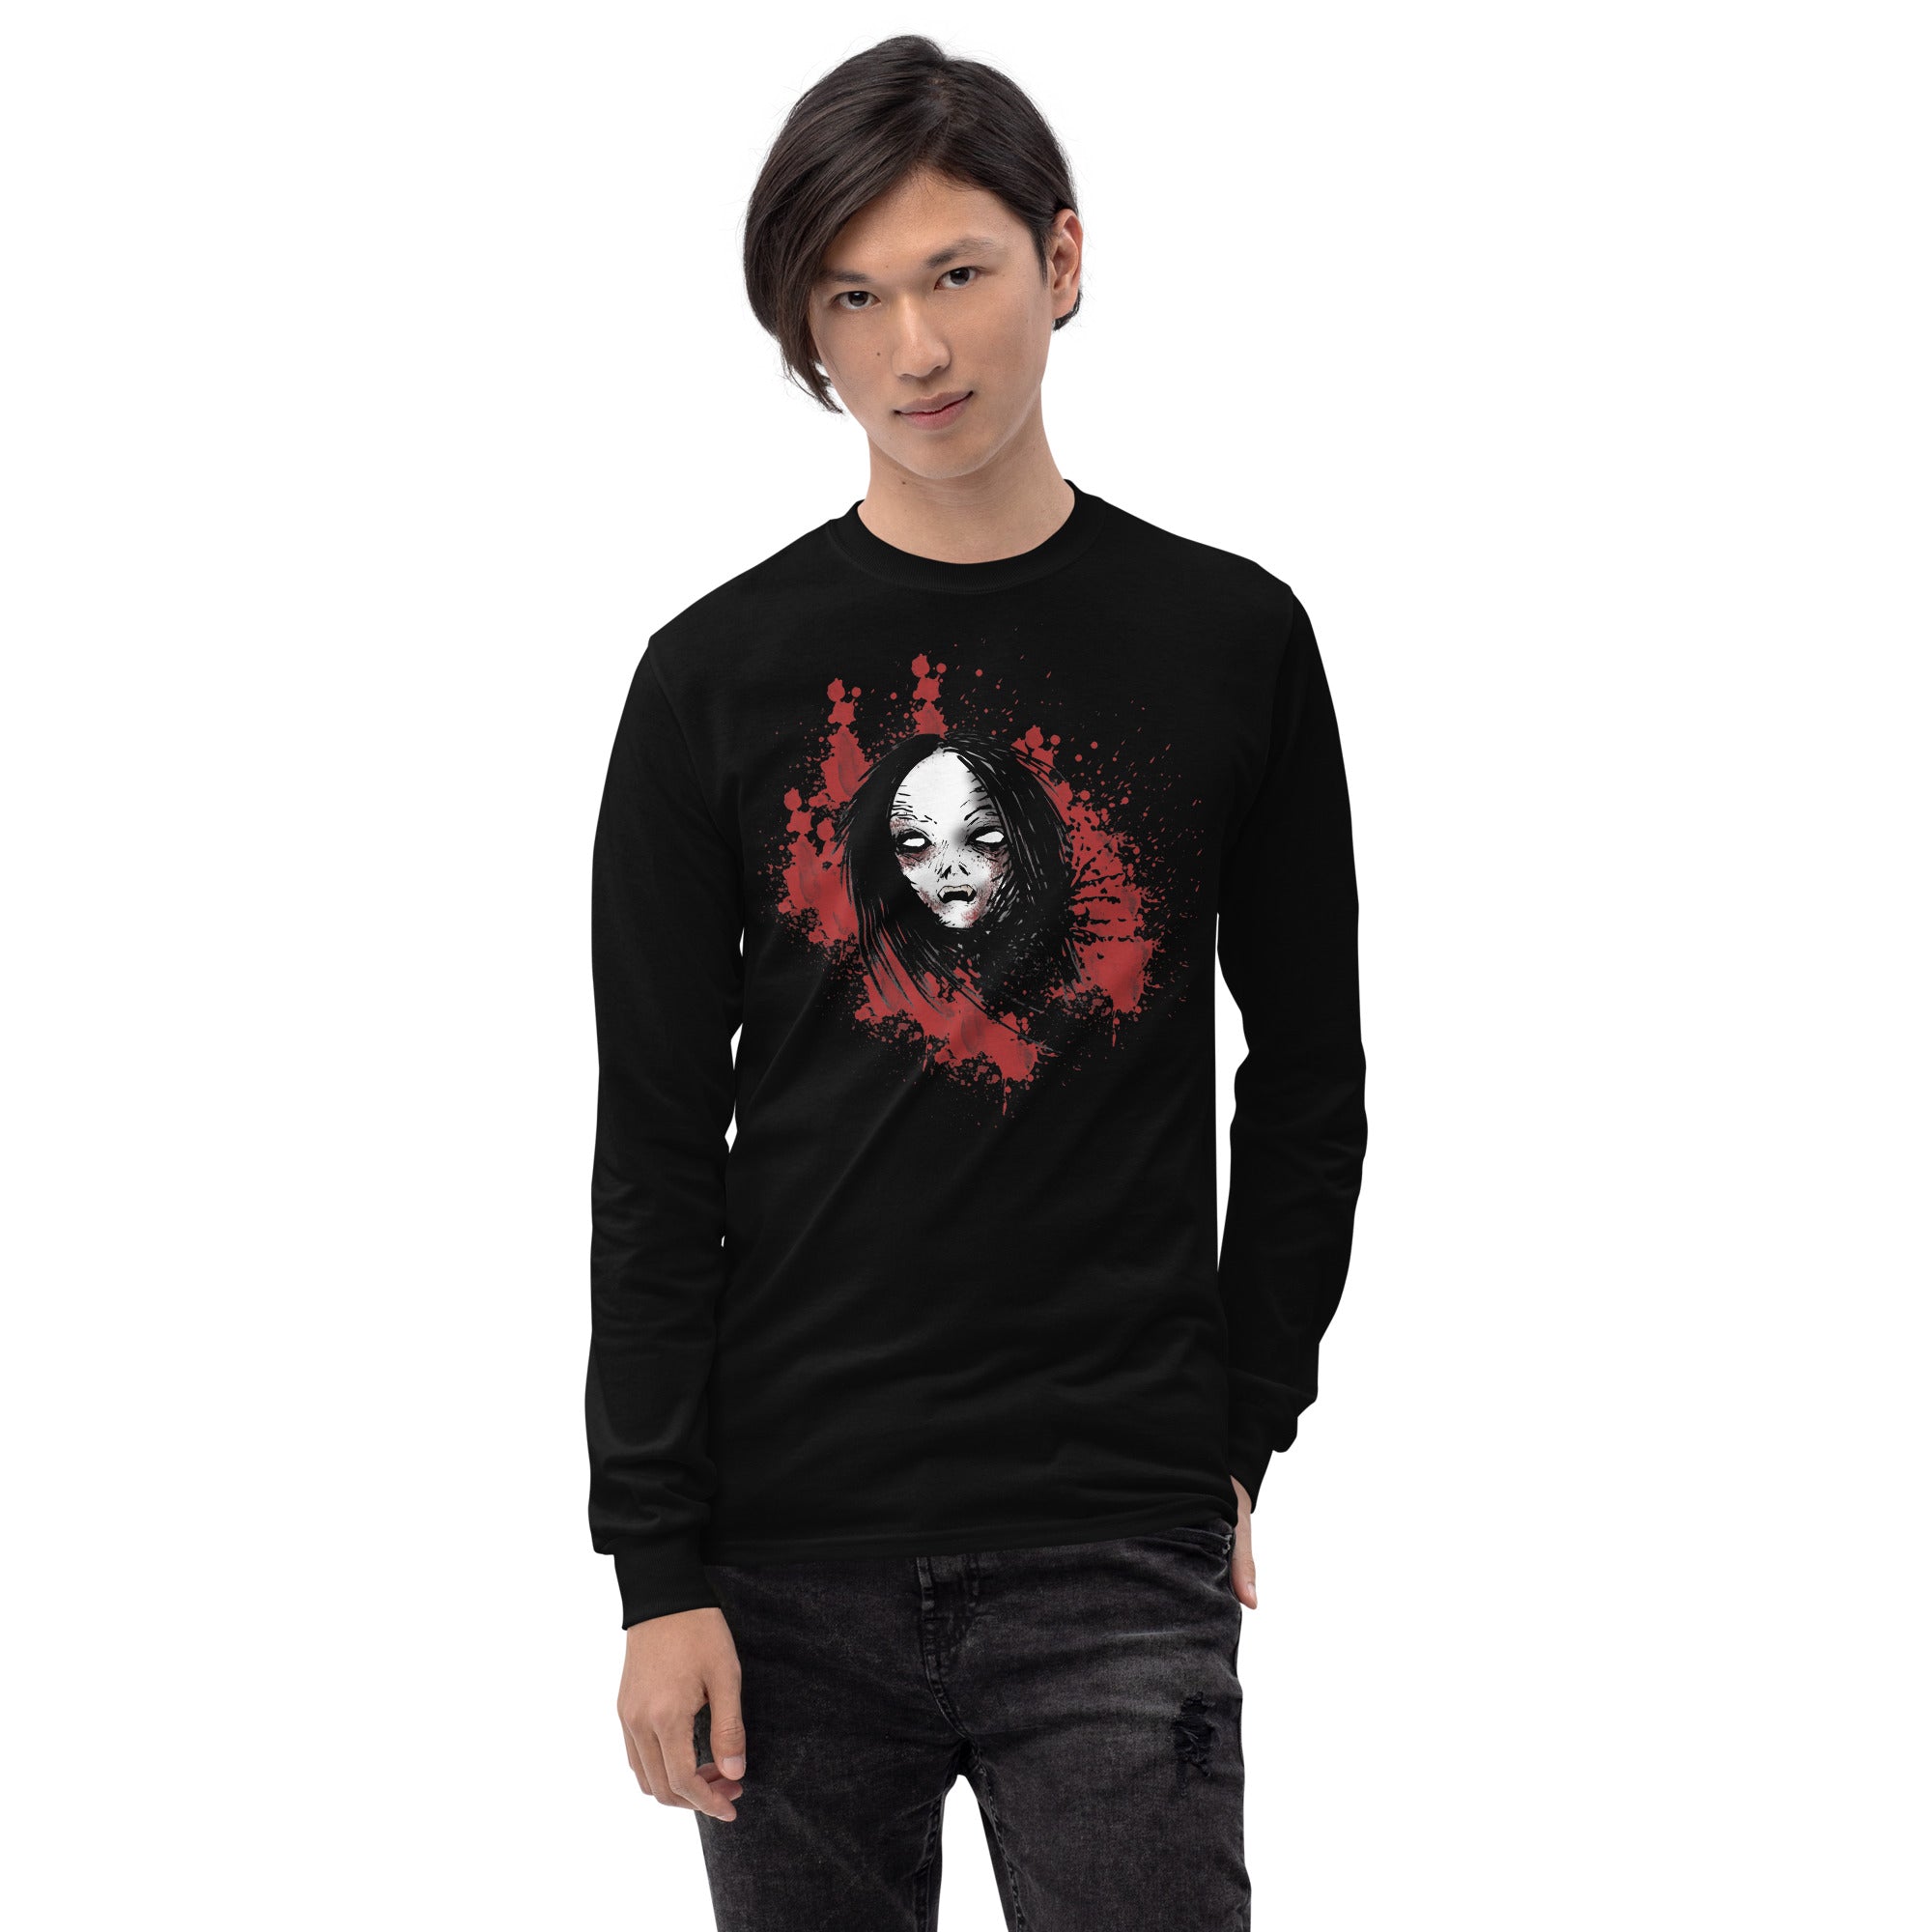 Undead Anime Vampire Girl Horror Long Sleeve Shirt - Edge of Life Designs